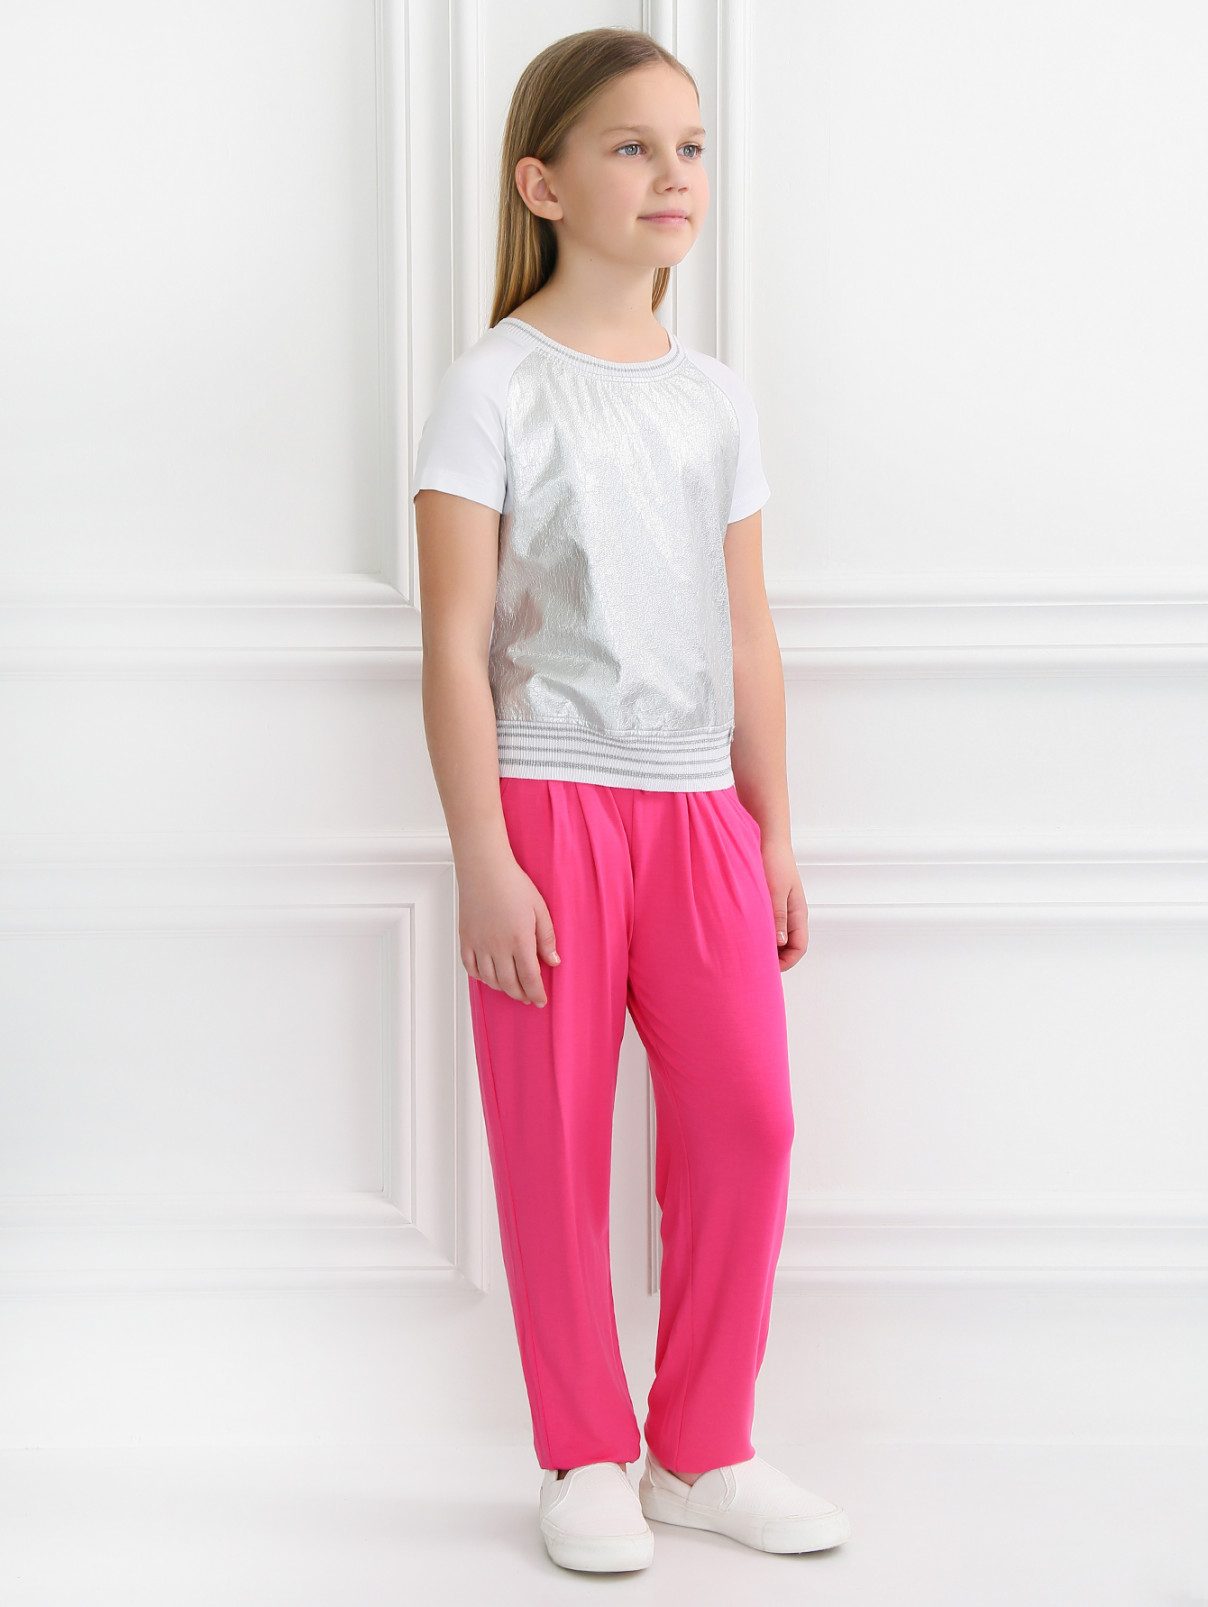 Трикотажные брюки на резинке Sonia Rykiel  –  Модель Общий вид  – Цвет:  Розовый